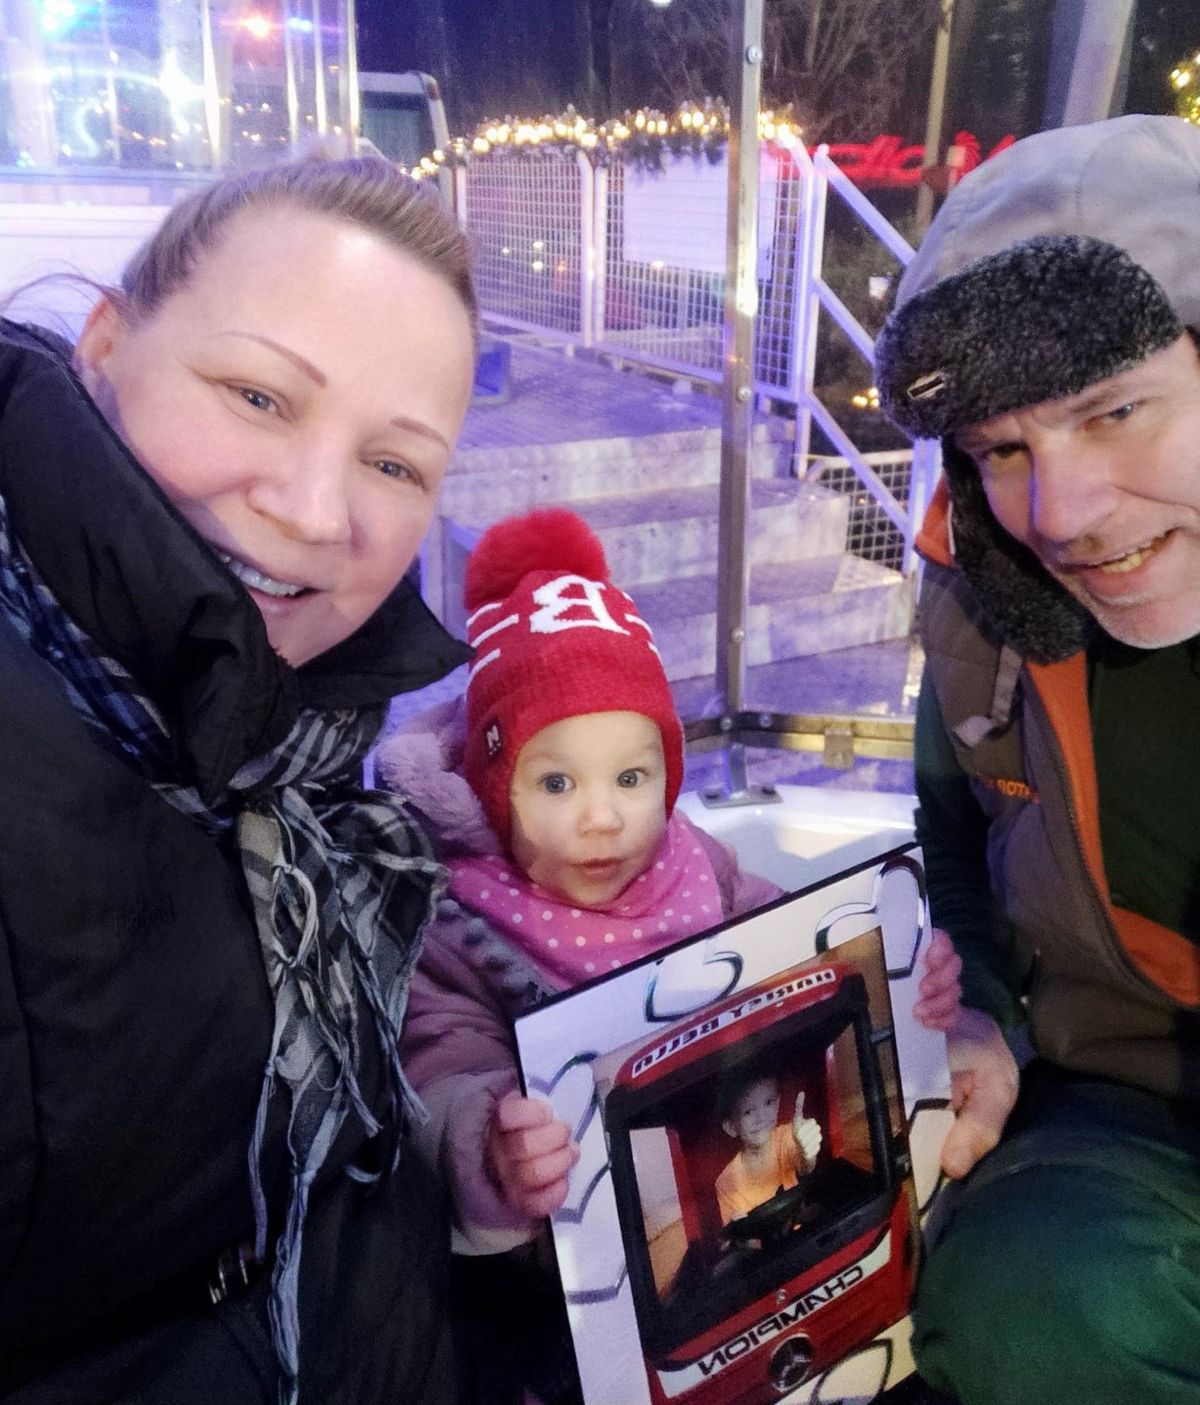 Marci szülei Lujzával és kisfiuk fényképével együtt utaztak a tatabányai óriáskeréken